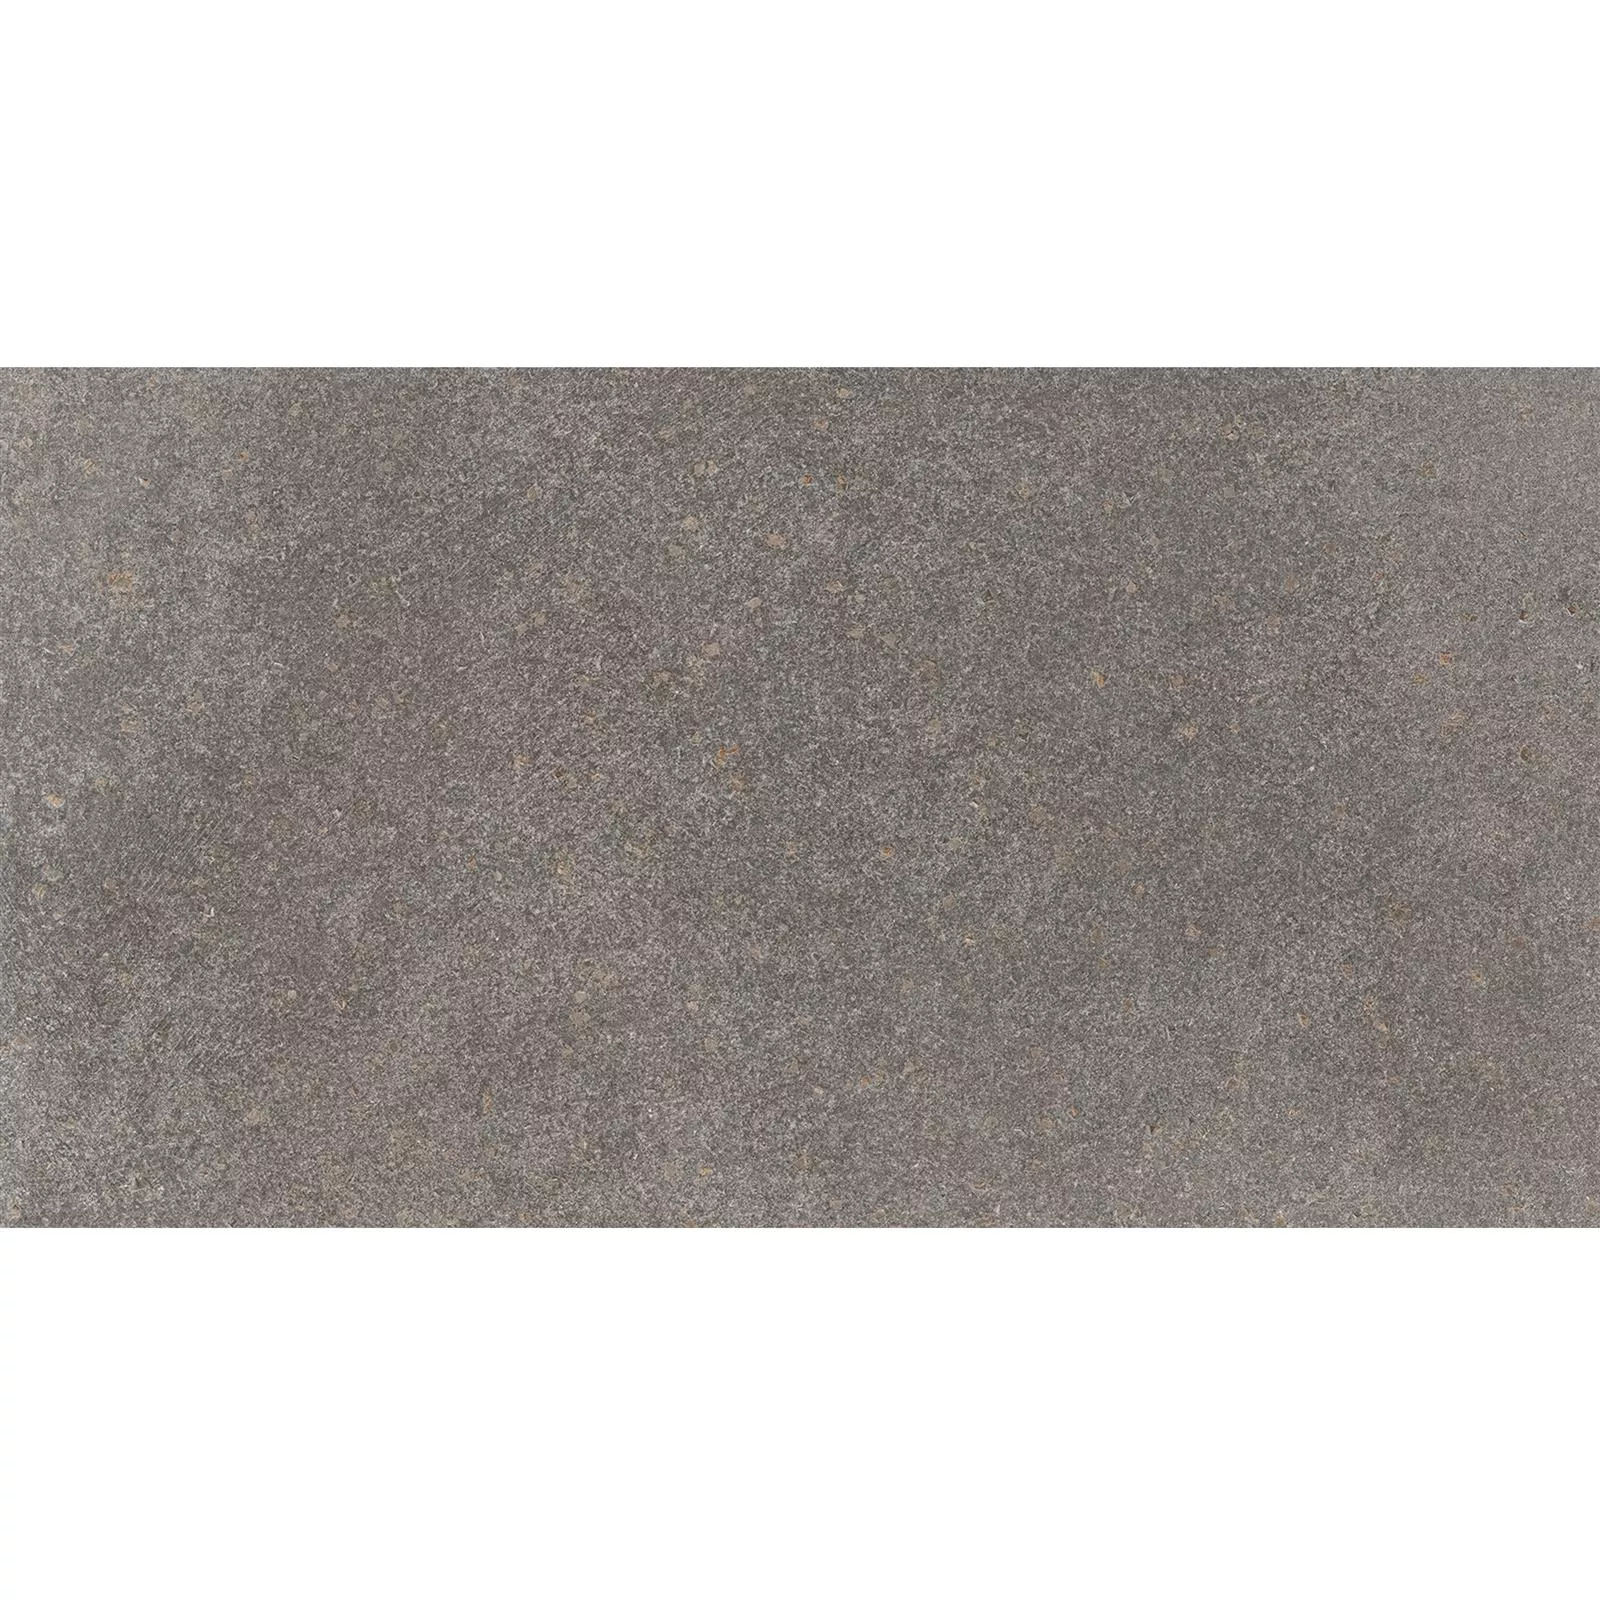 Padrão Ladrilhos Olhar de Pedra Horizon Marrom 30x60cm